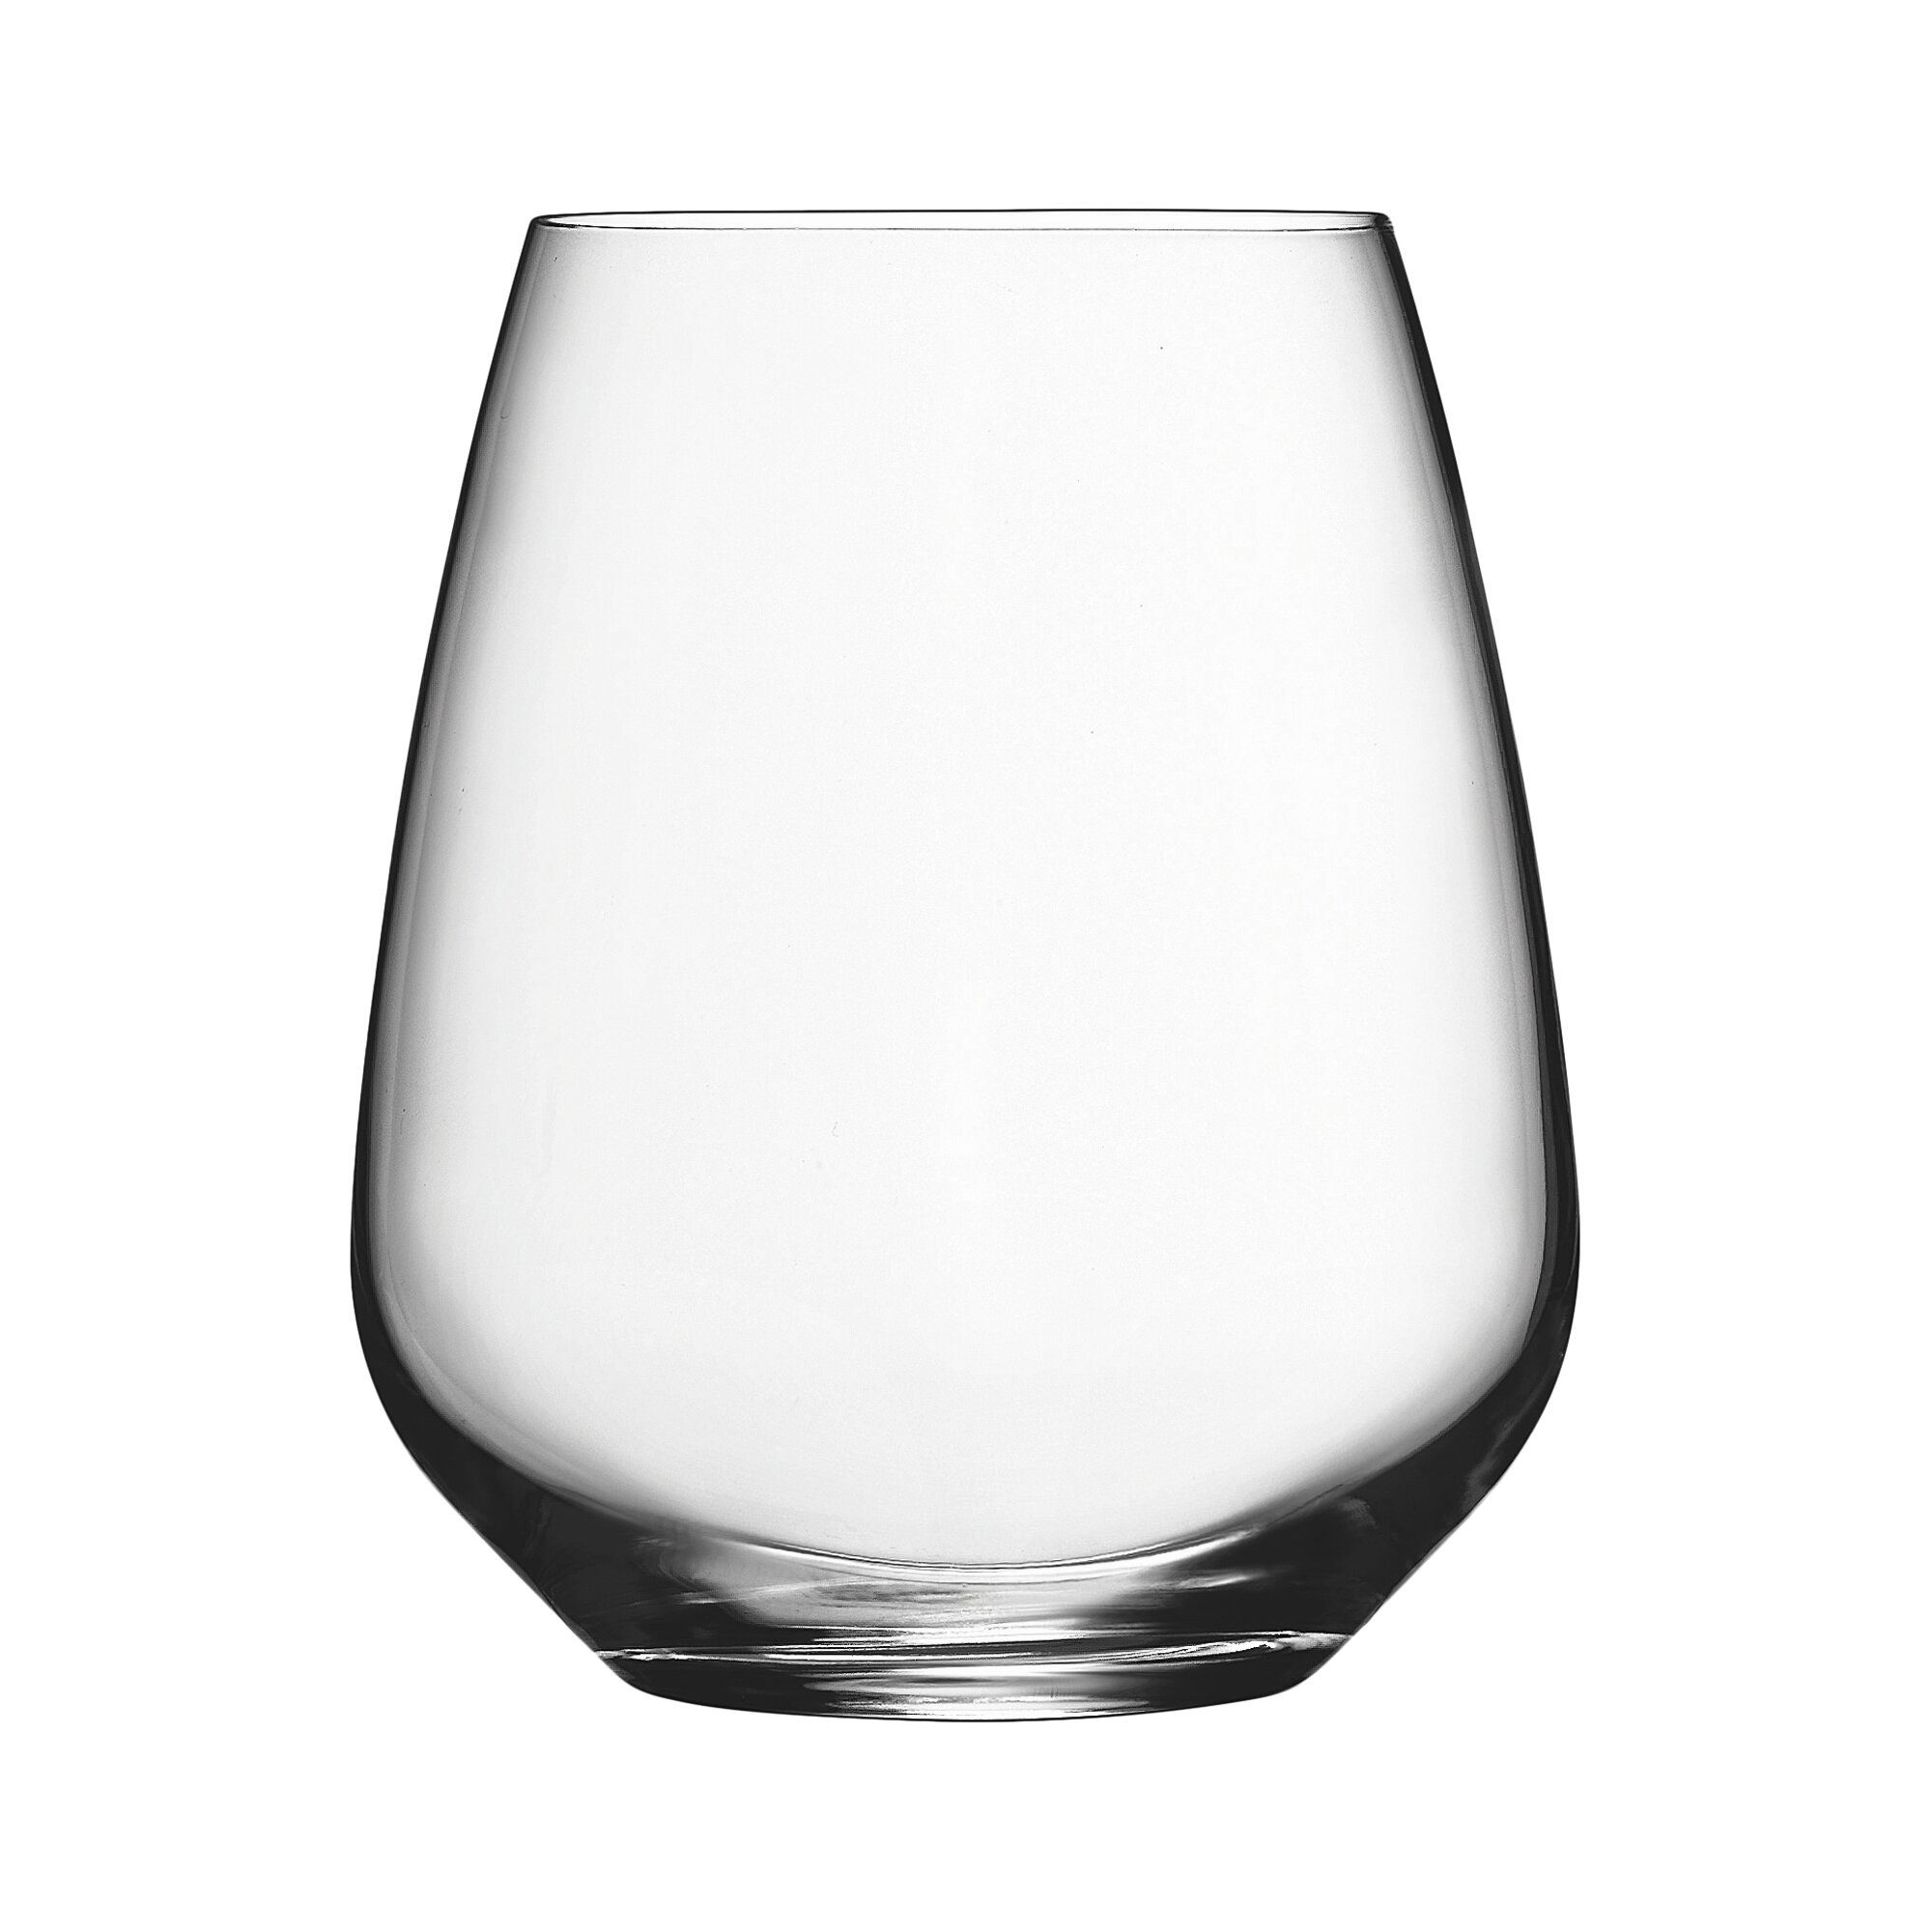 luigi bormioli wine glasses